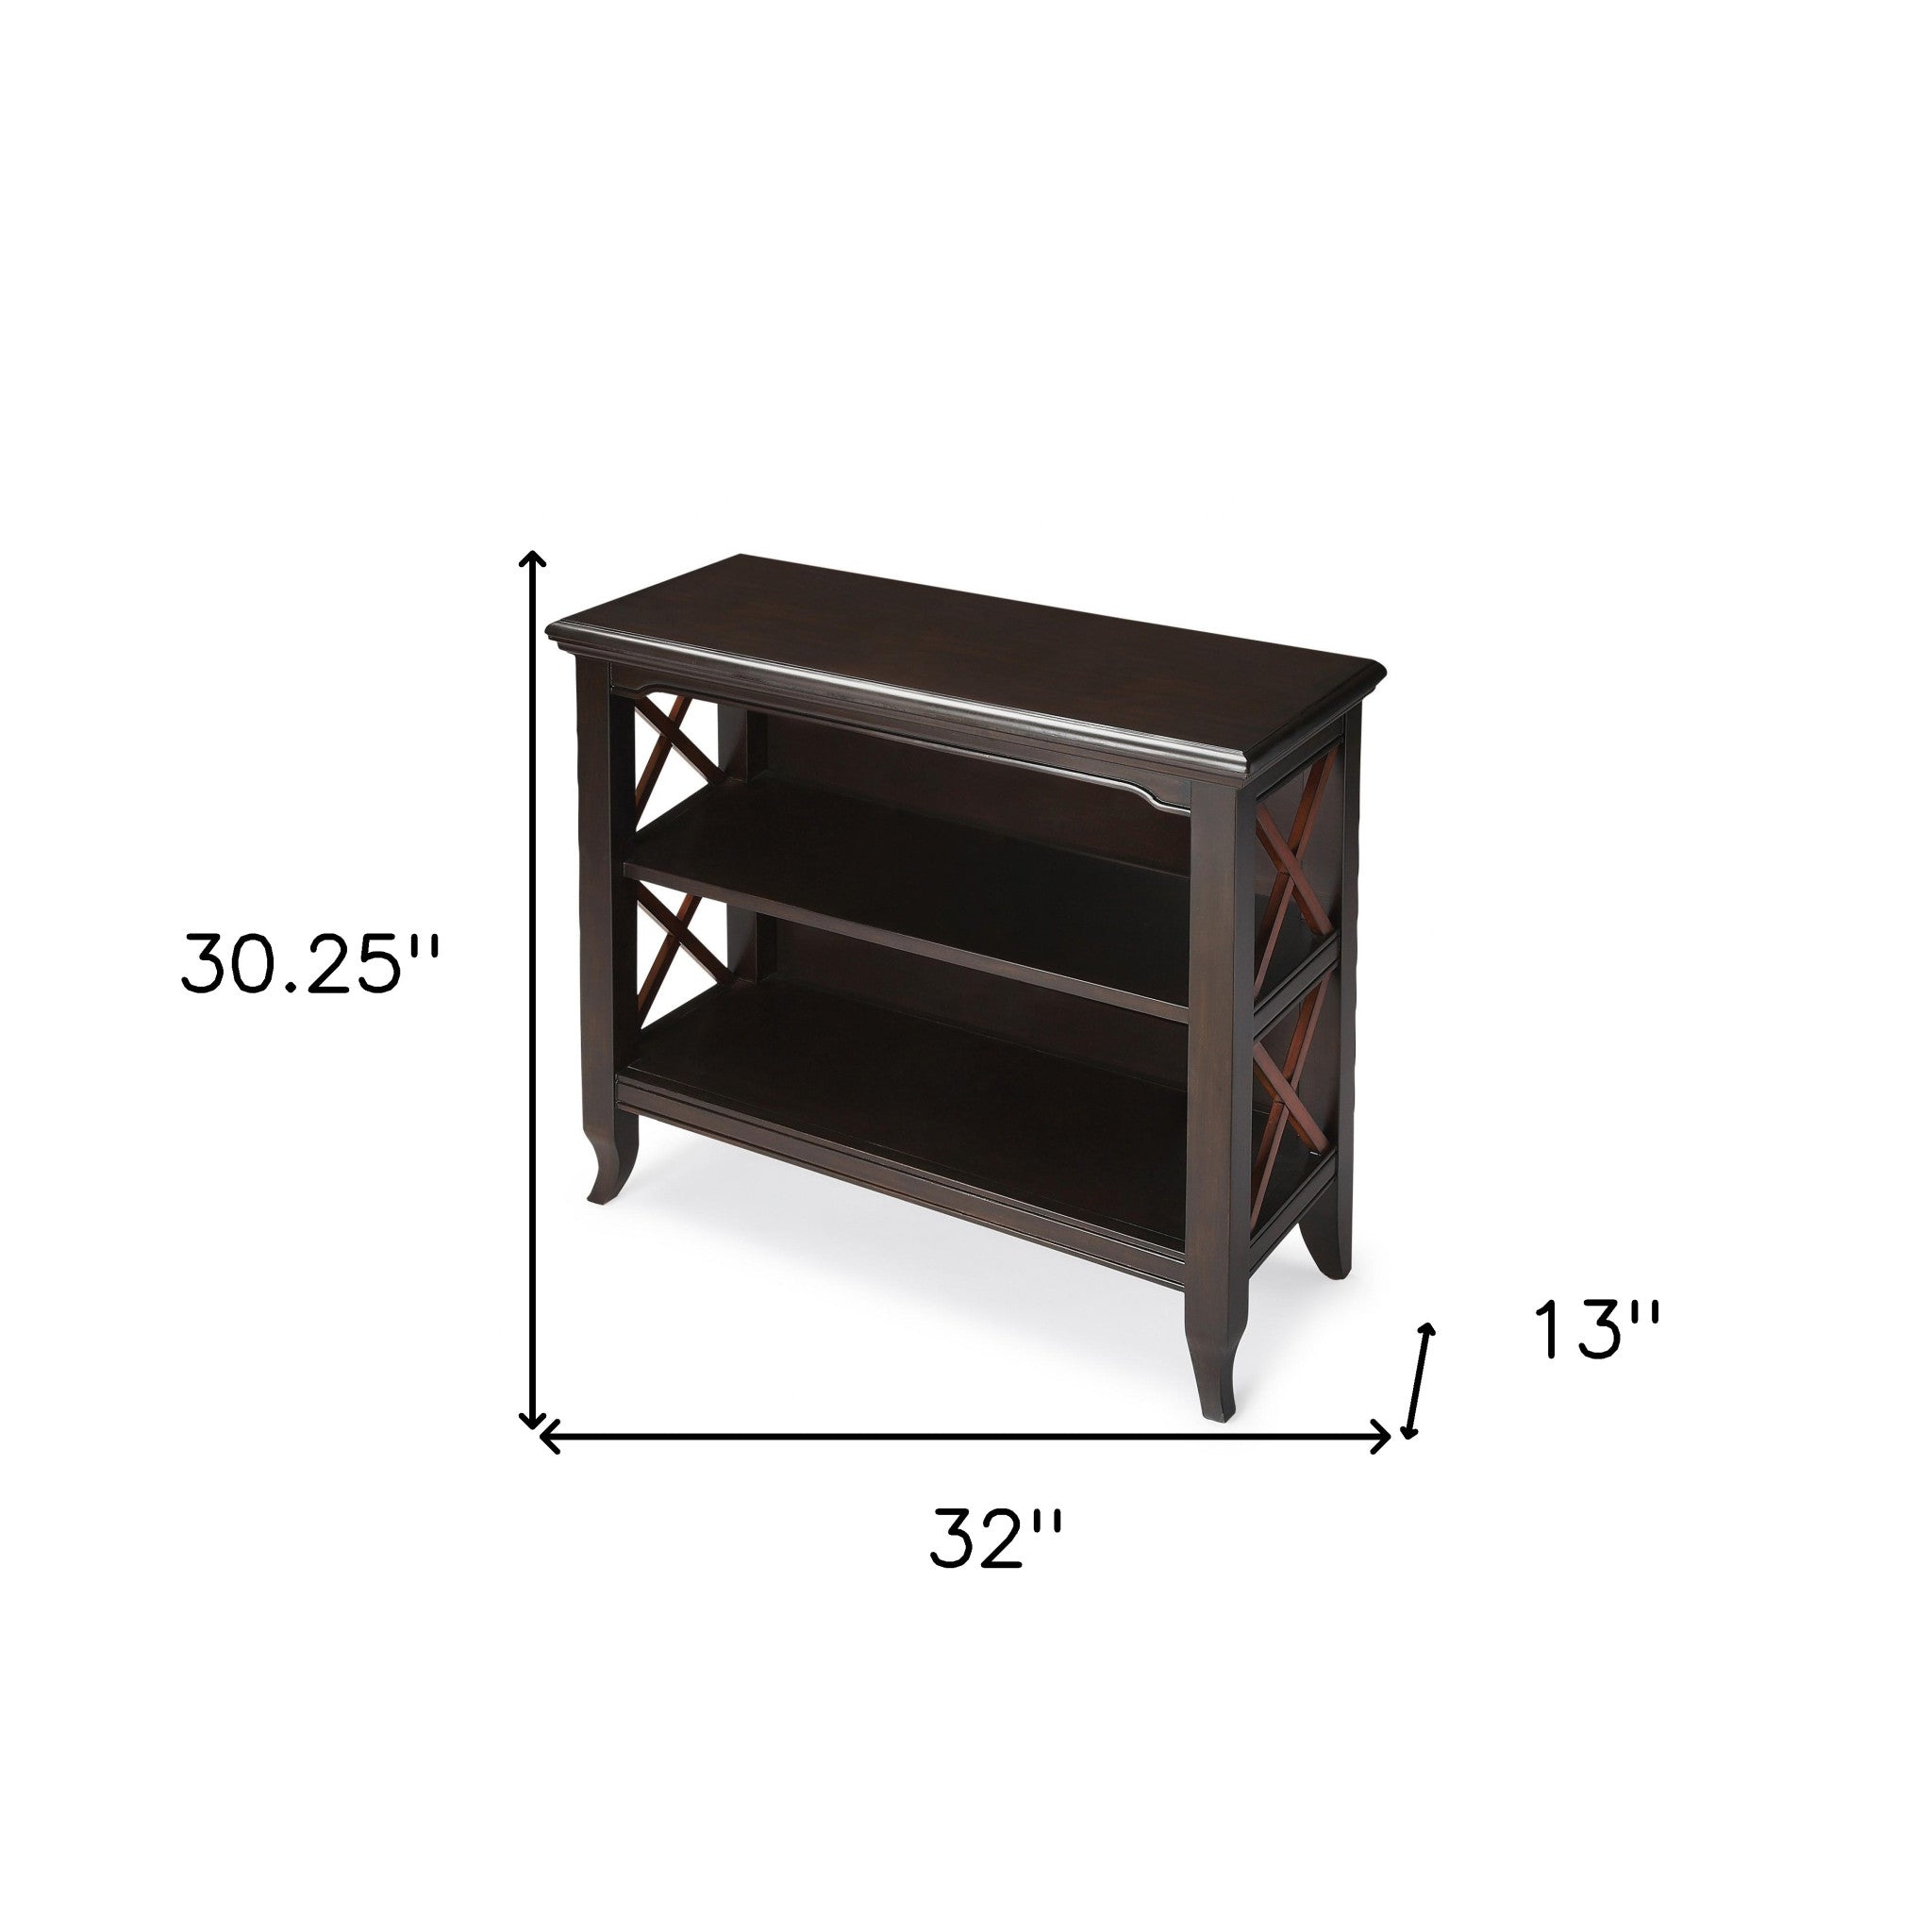 30" Dark Brown Two Tier Standard Bookcase